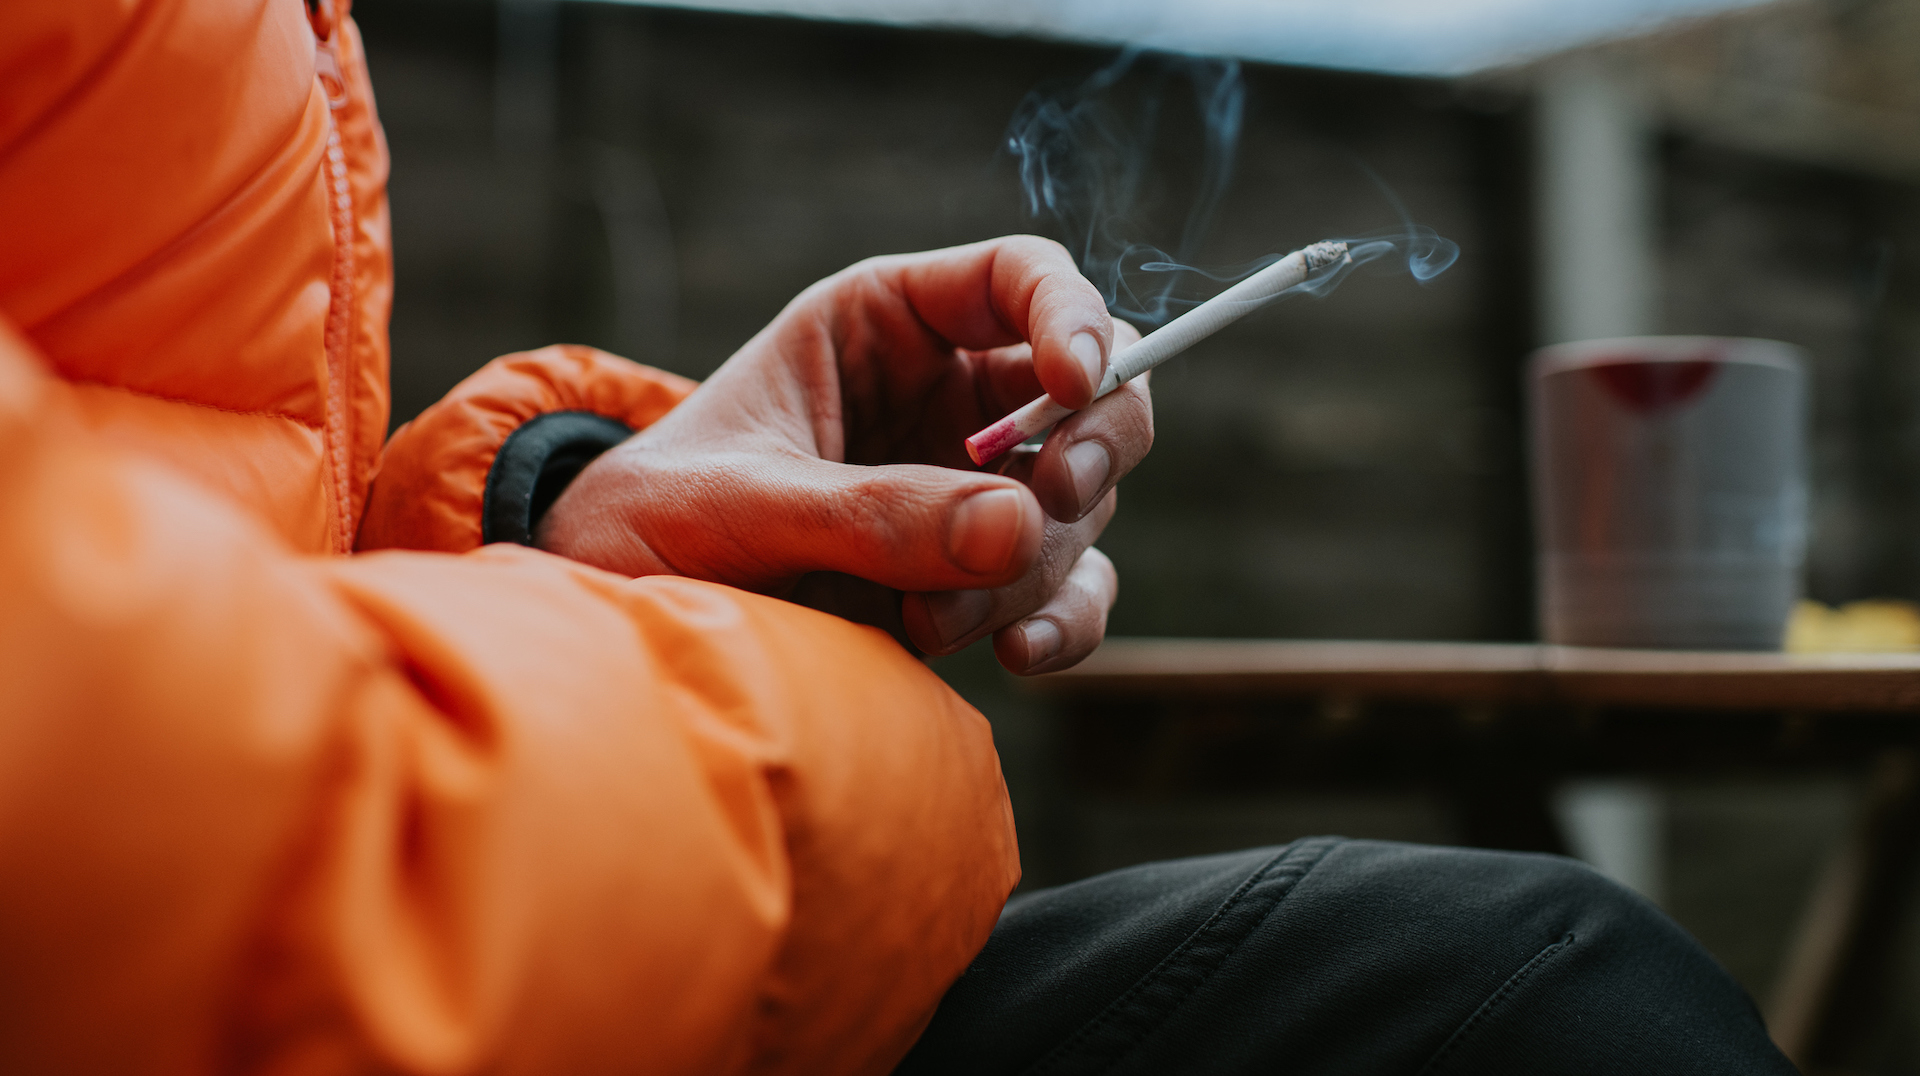 Uma fotografia de uma pessoa com uma jaqueta fofa fumando um cigarro.